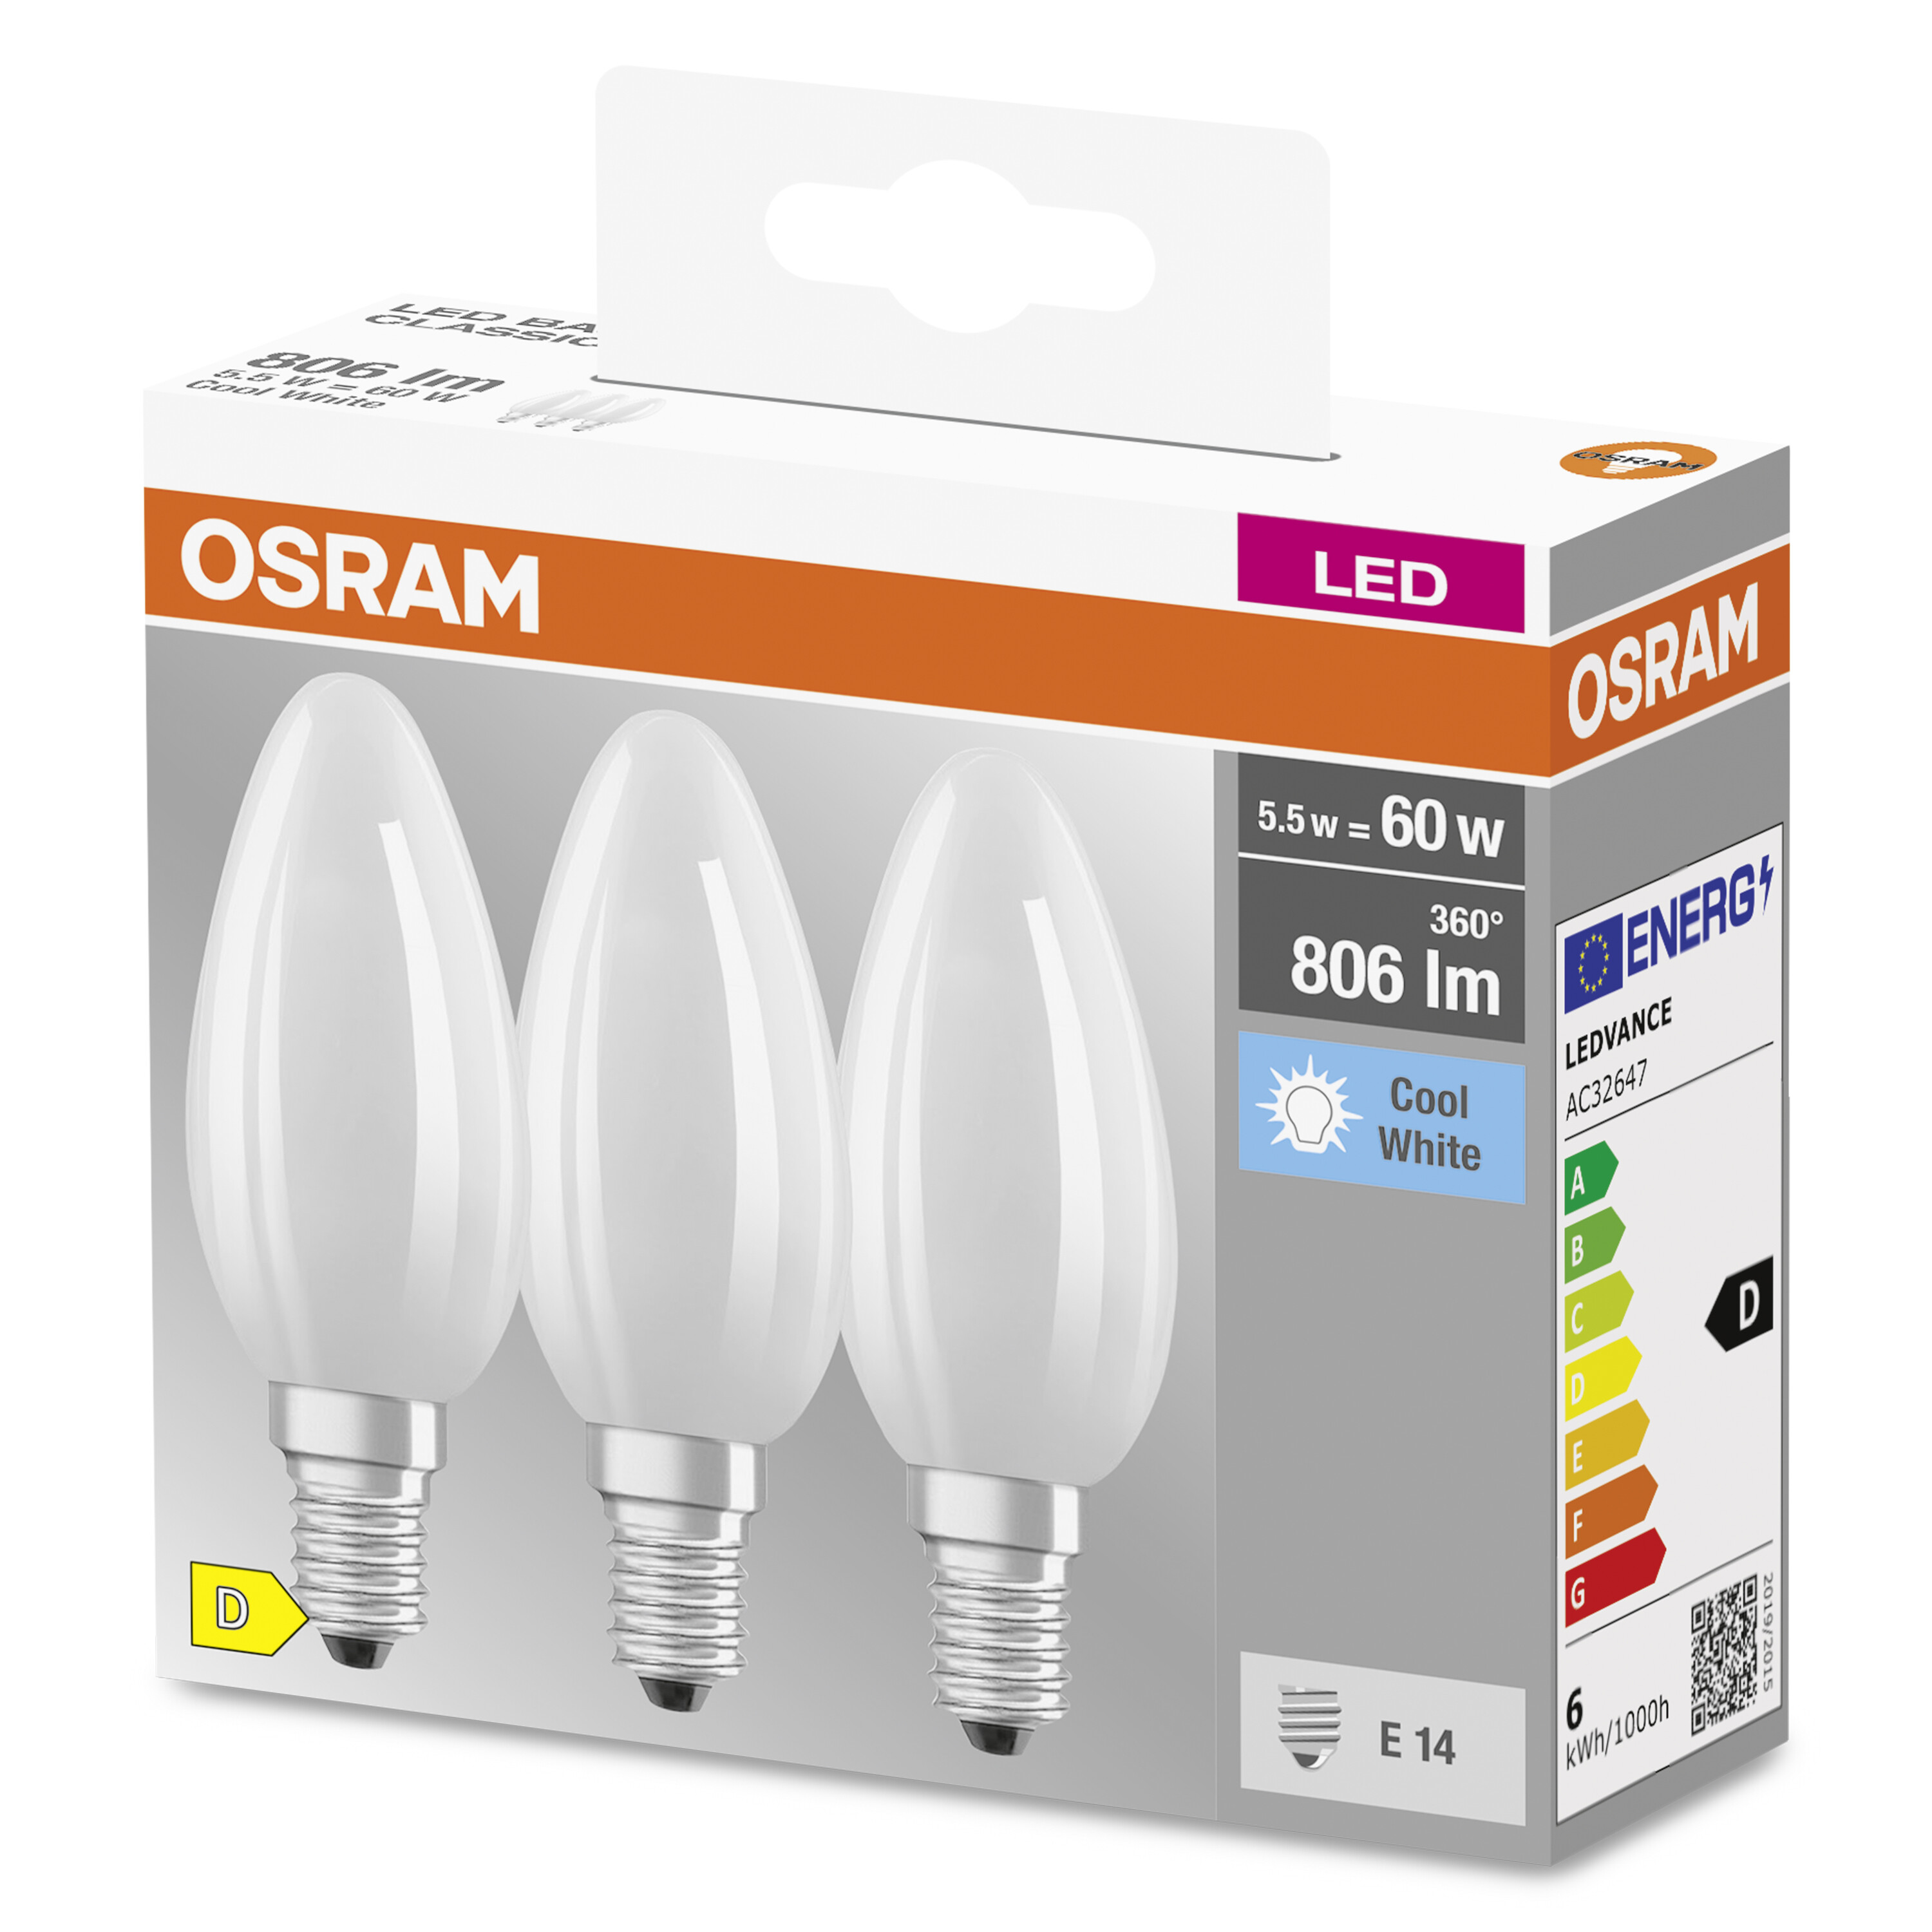 B Lampe BASE LED OSRAM  806 Lumen Kaltweiß LED CLASSIC